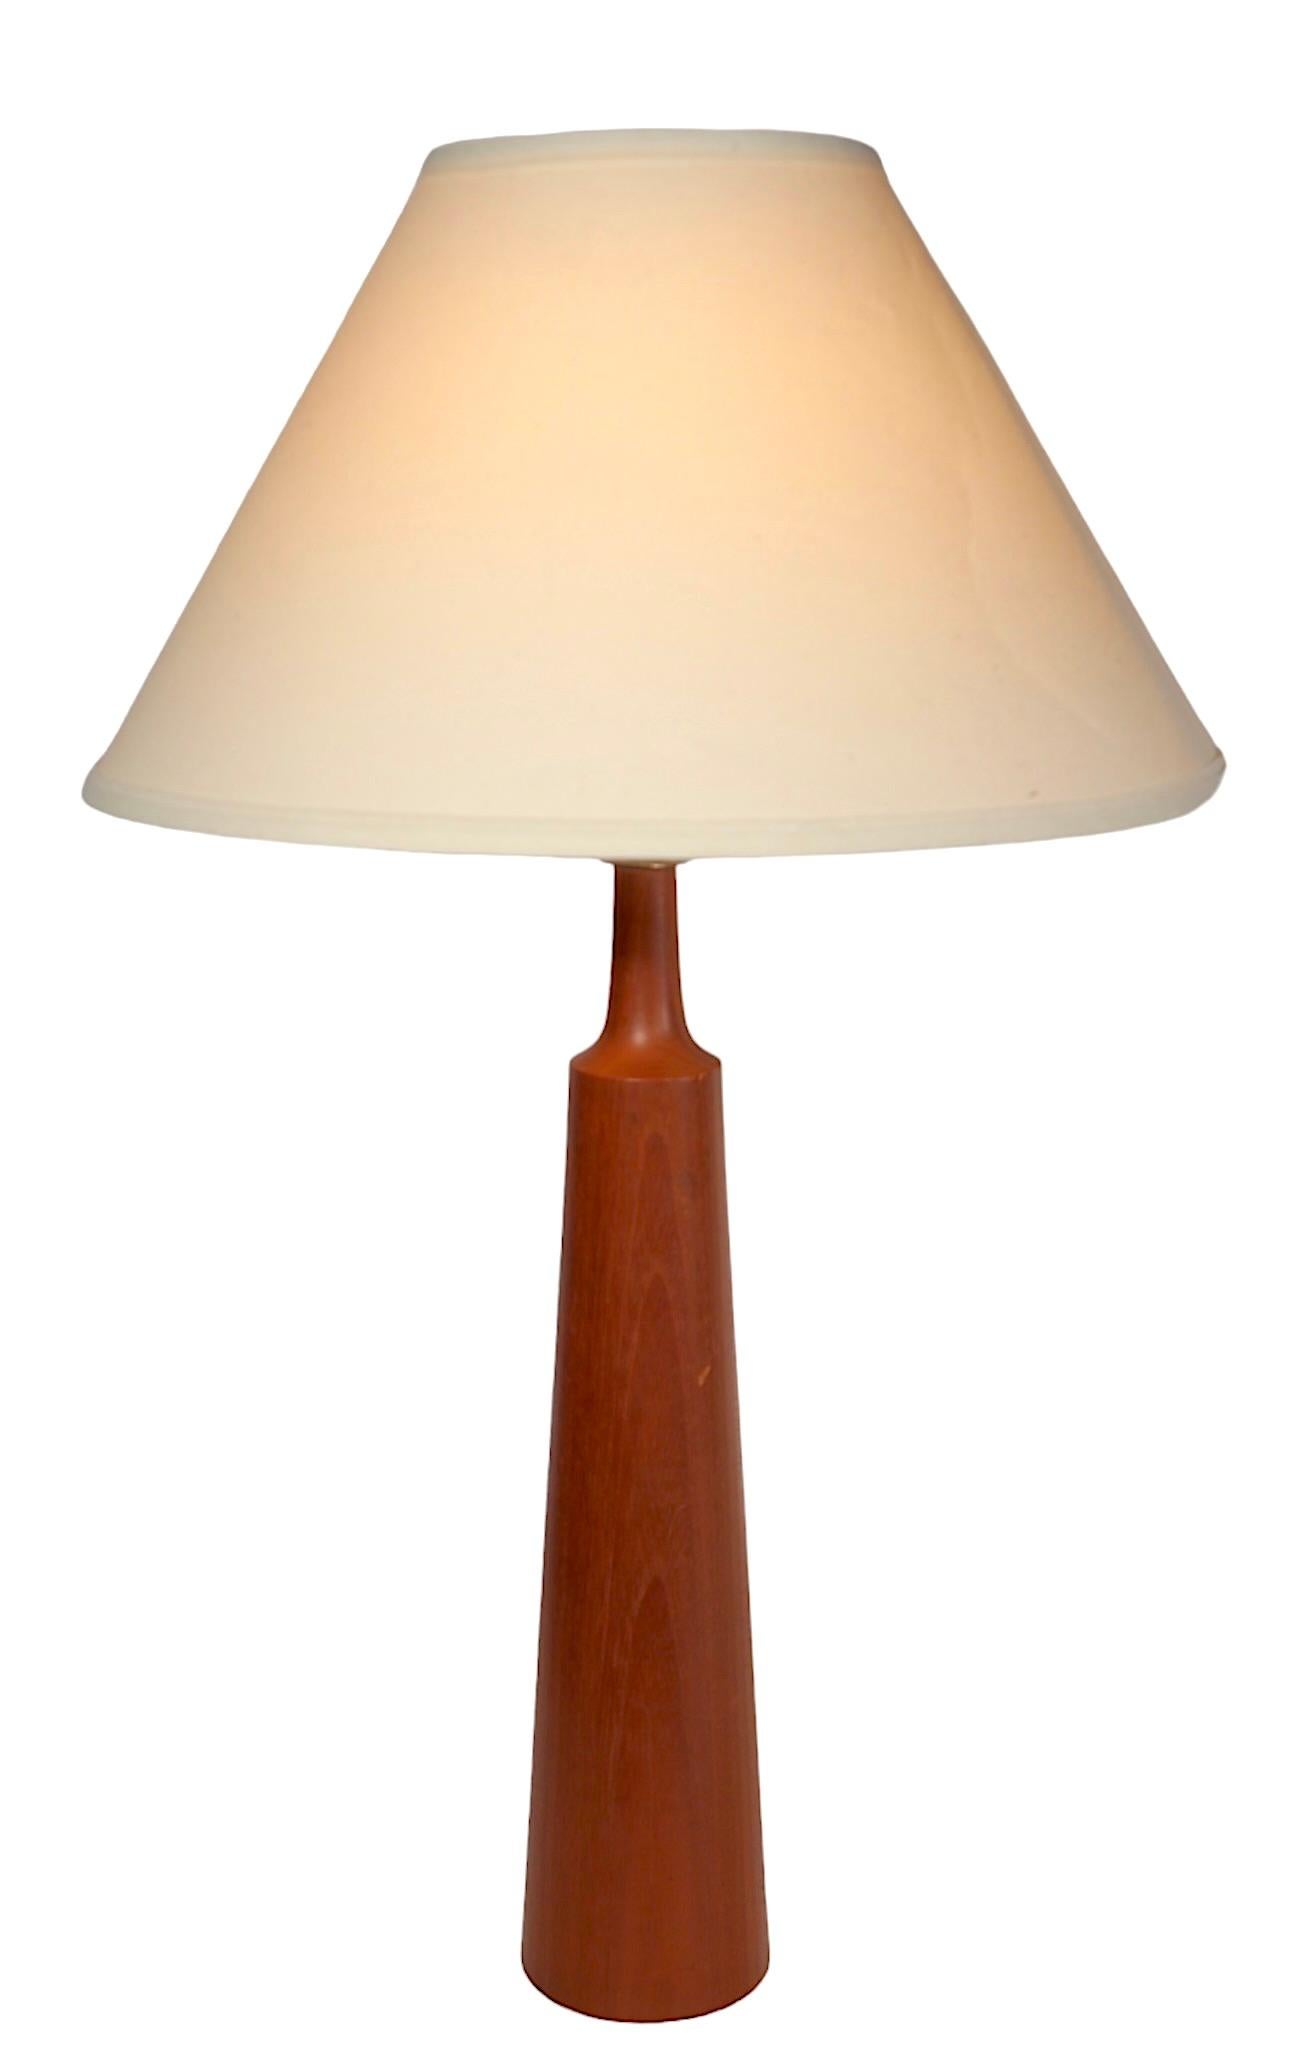 Klassische dänische Mid Century Modern Tischlampe aus massivem Teakholz, ca. 1950/1960er Jahre. Die Lampe hat die Form einer Flasche mit einem sich verjüngenden zylindrischen Körper und einem sich verjüngenden Stangenhals. Dieses Exemplar ist in